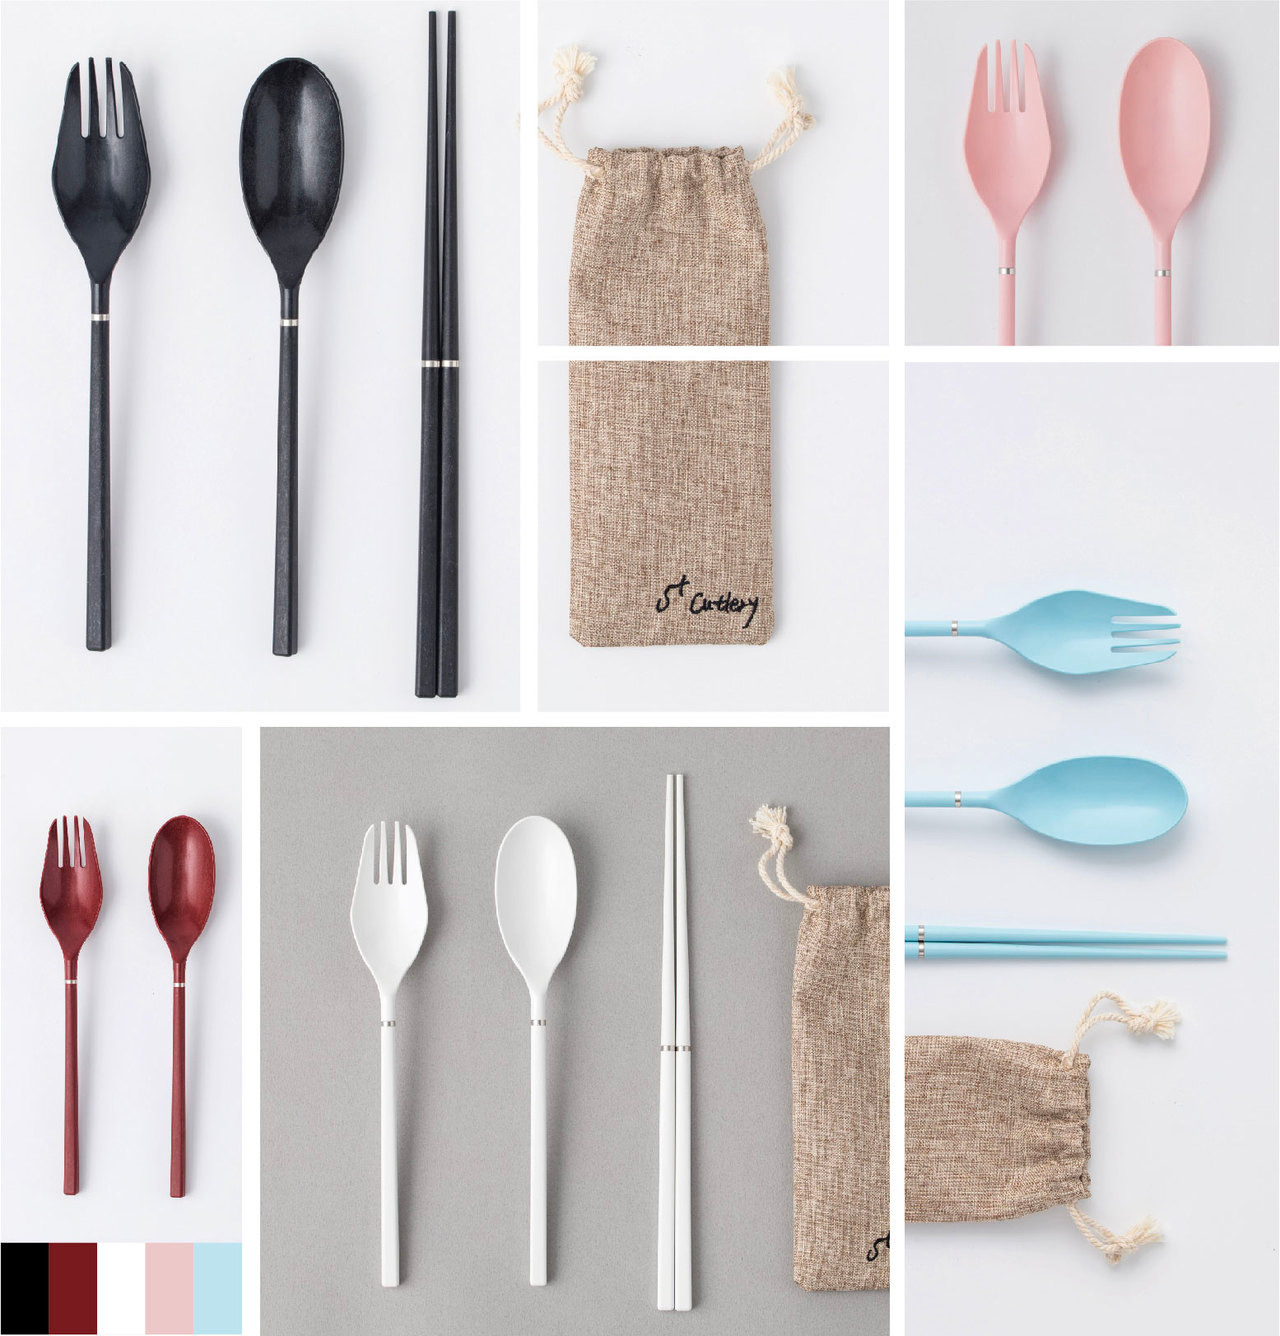 S+ Cutlery 輕巧餐具組，筷、叉、匙多款絕美色系流星黑、高雅白、天空藍、玫瑰粉、紫檀紅